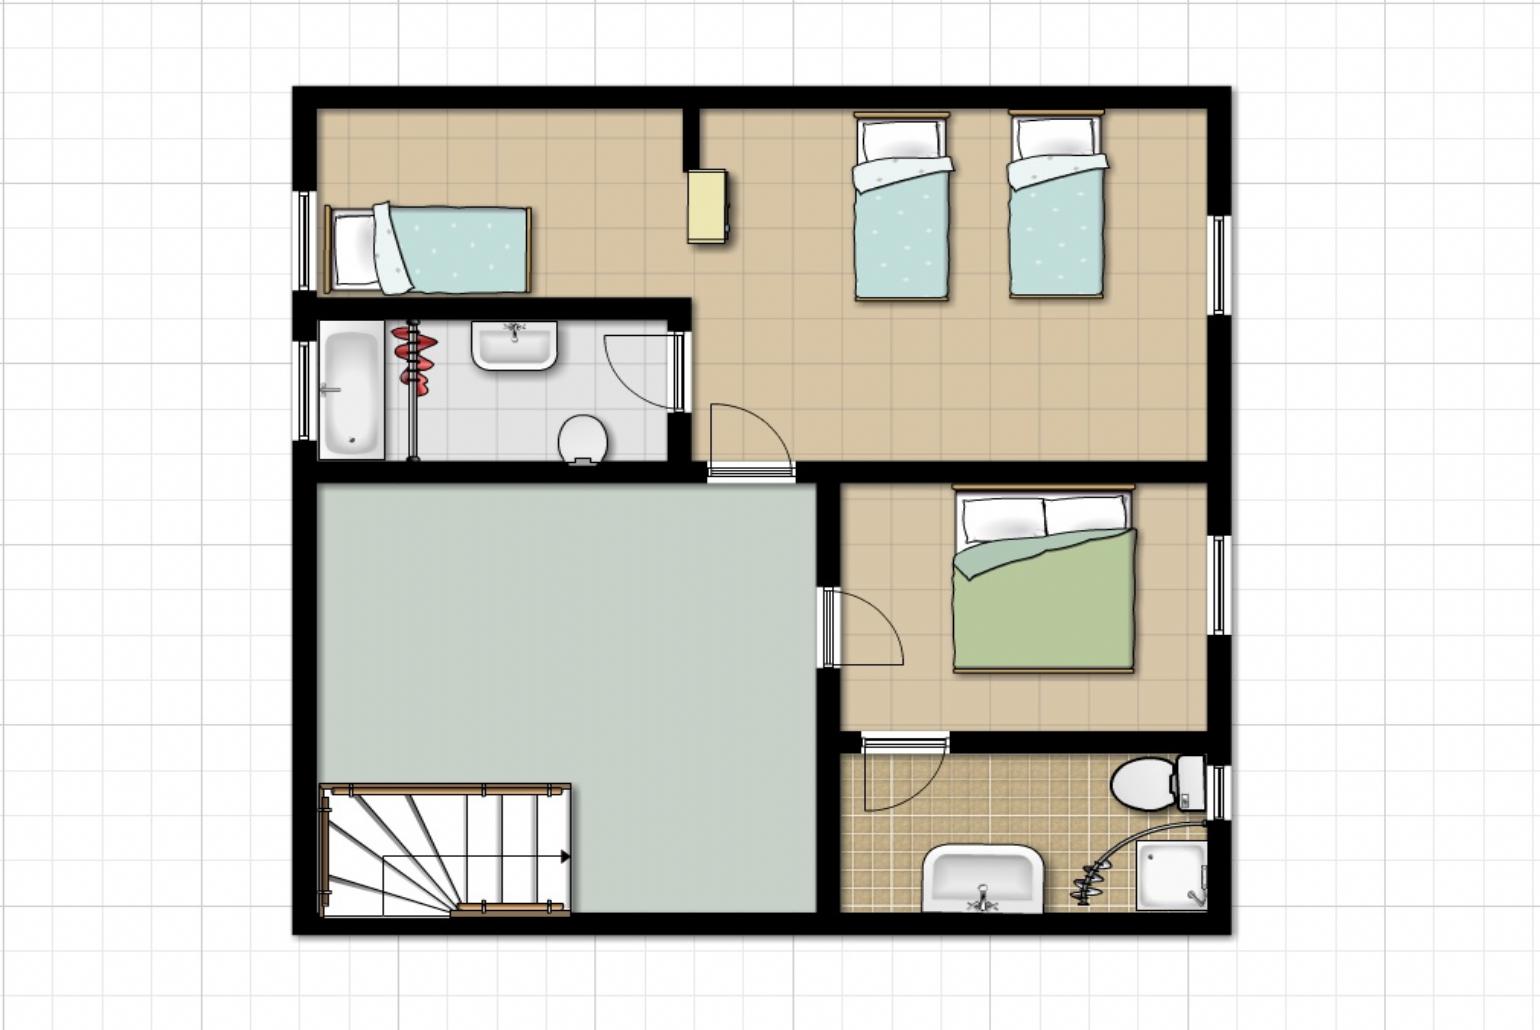 Floor Plan: ground floor